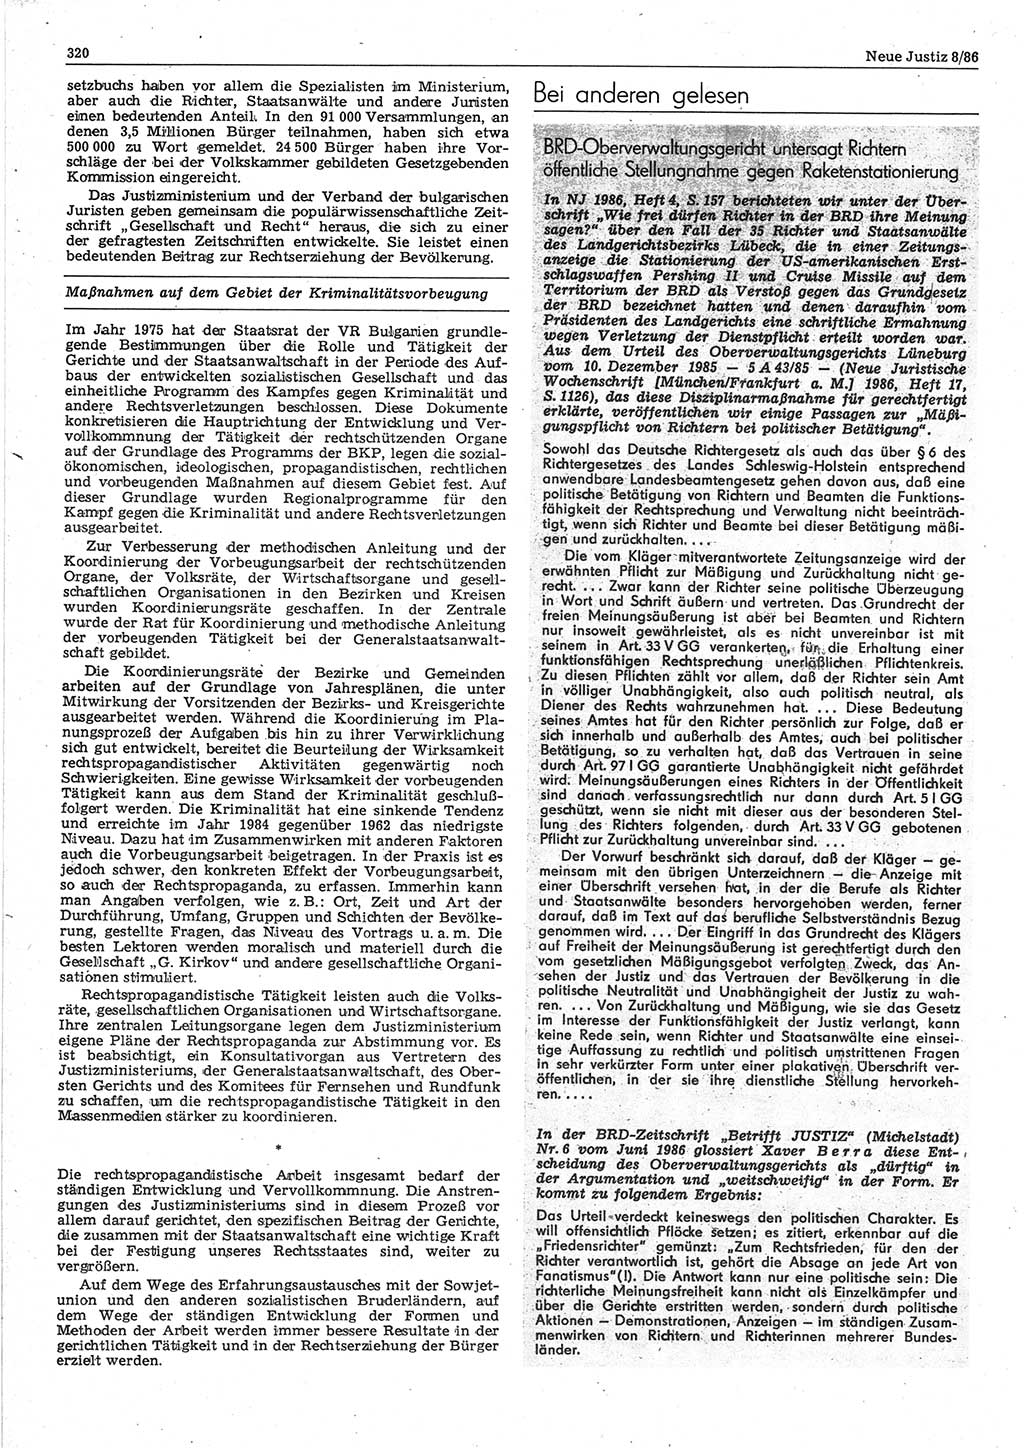 Neue Justiz (NJ), Zeitschrift für sozialistisches Recht und Gesetzlichkeit [Deutsche Demokratische Republik (DDR)], 40. Jahrgang 1986, Seite 320 (NJ DDR 1986, S. 320)